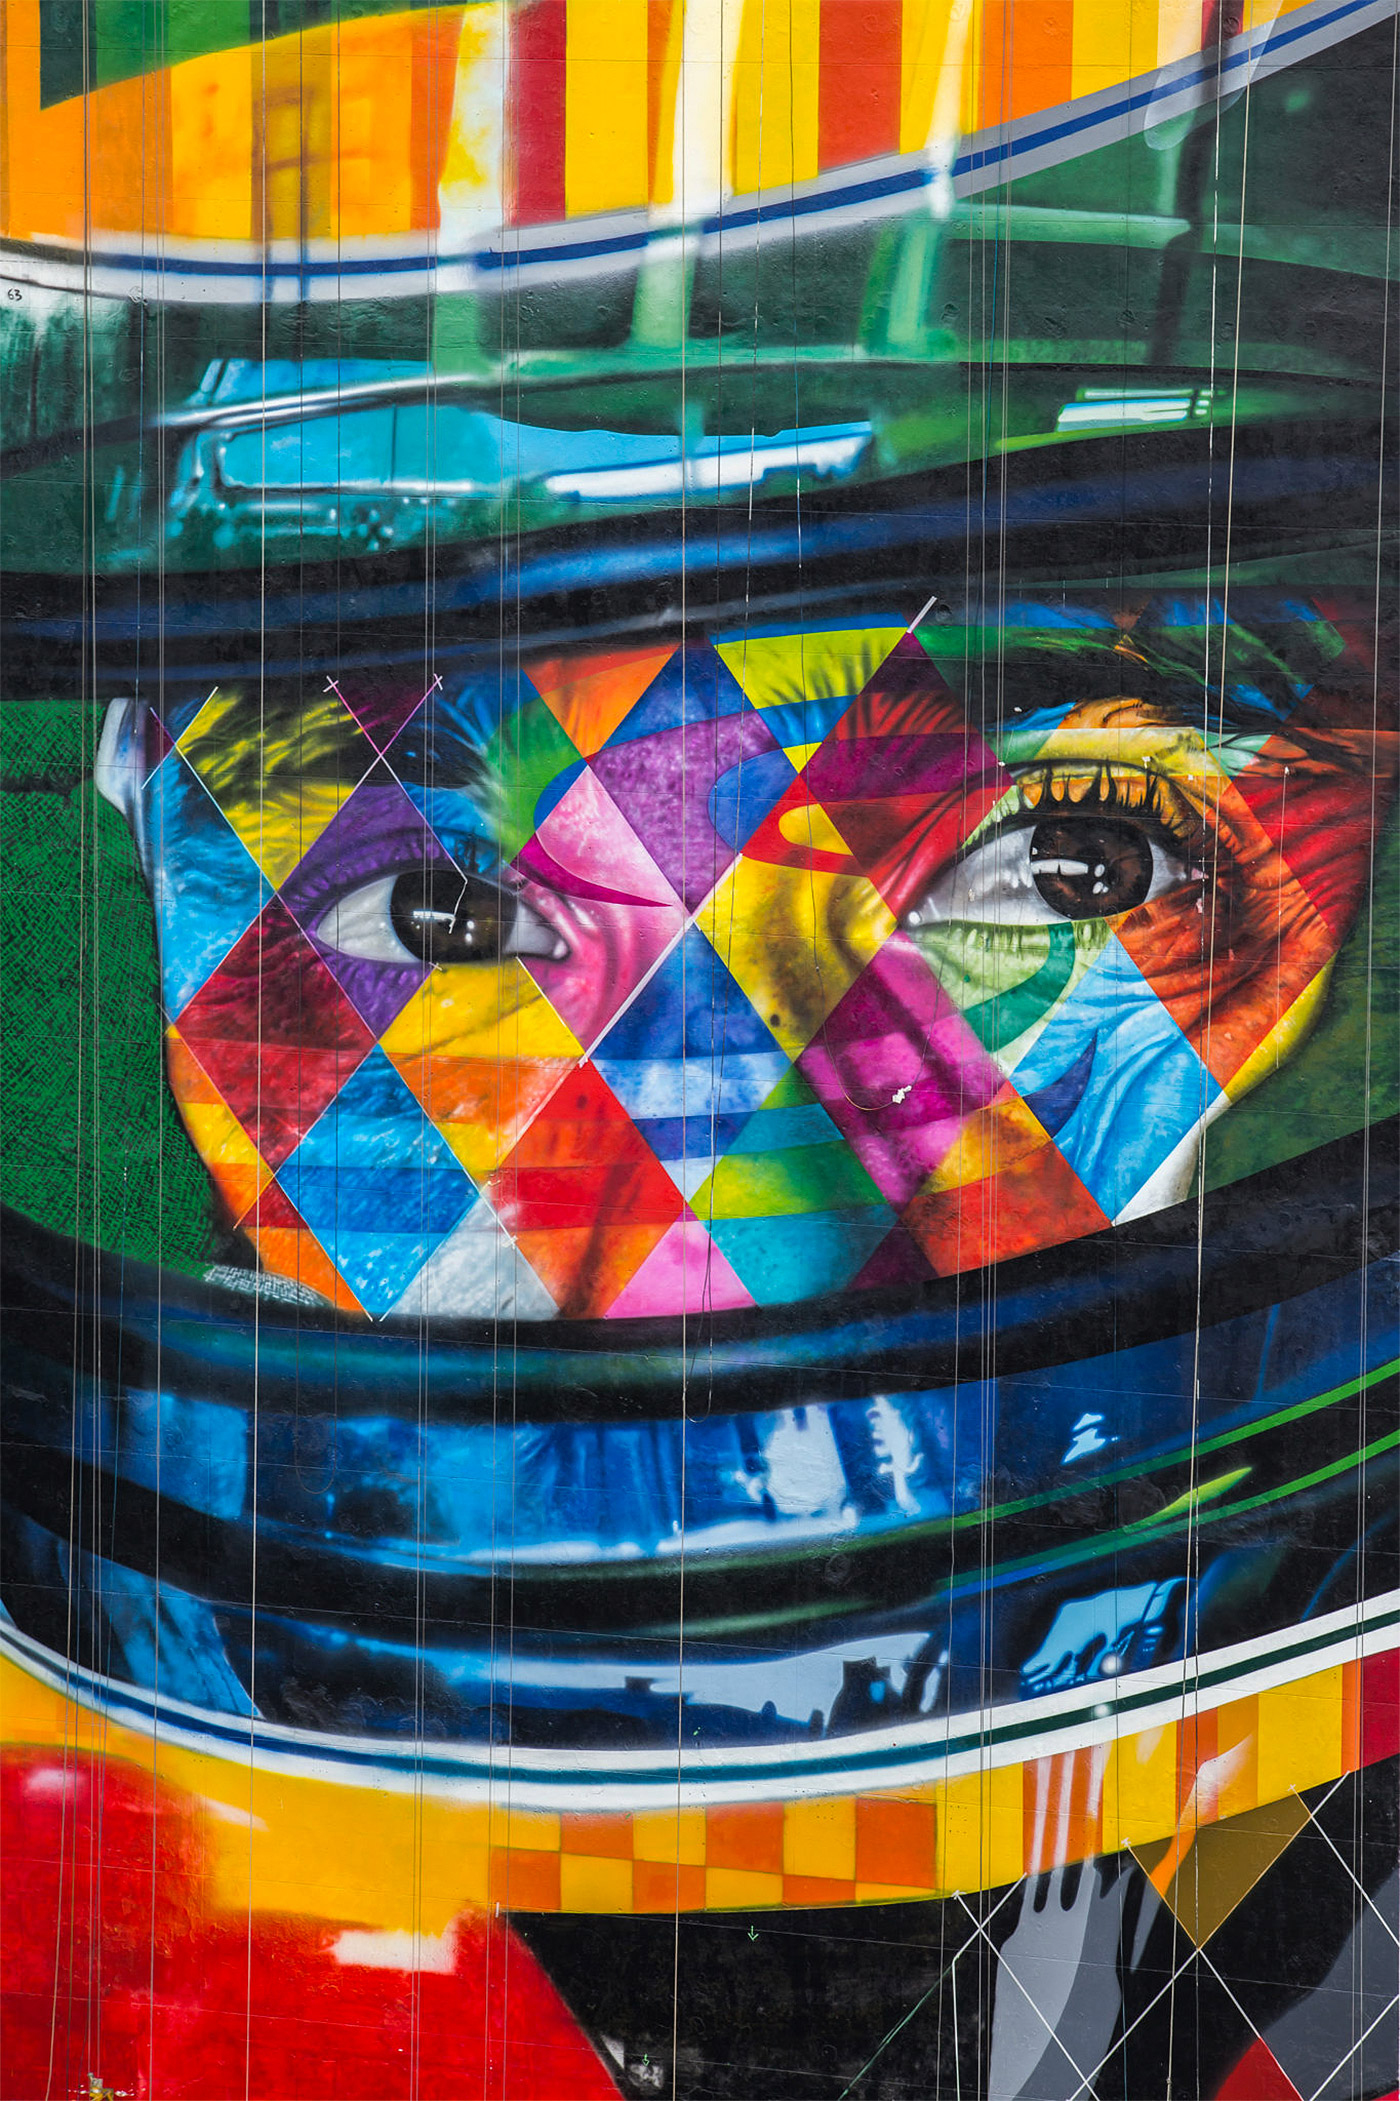 几何形状和鲜艳色彩完美结合，Eduardo Kobra街头壁画艺术